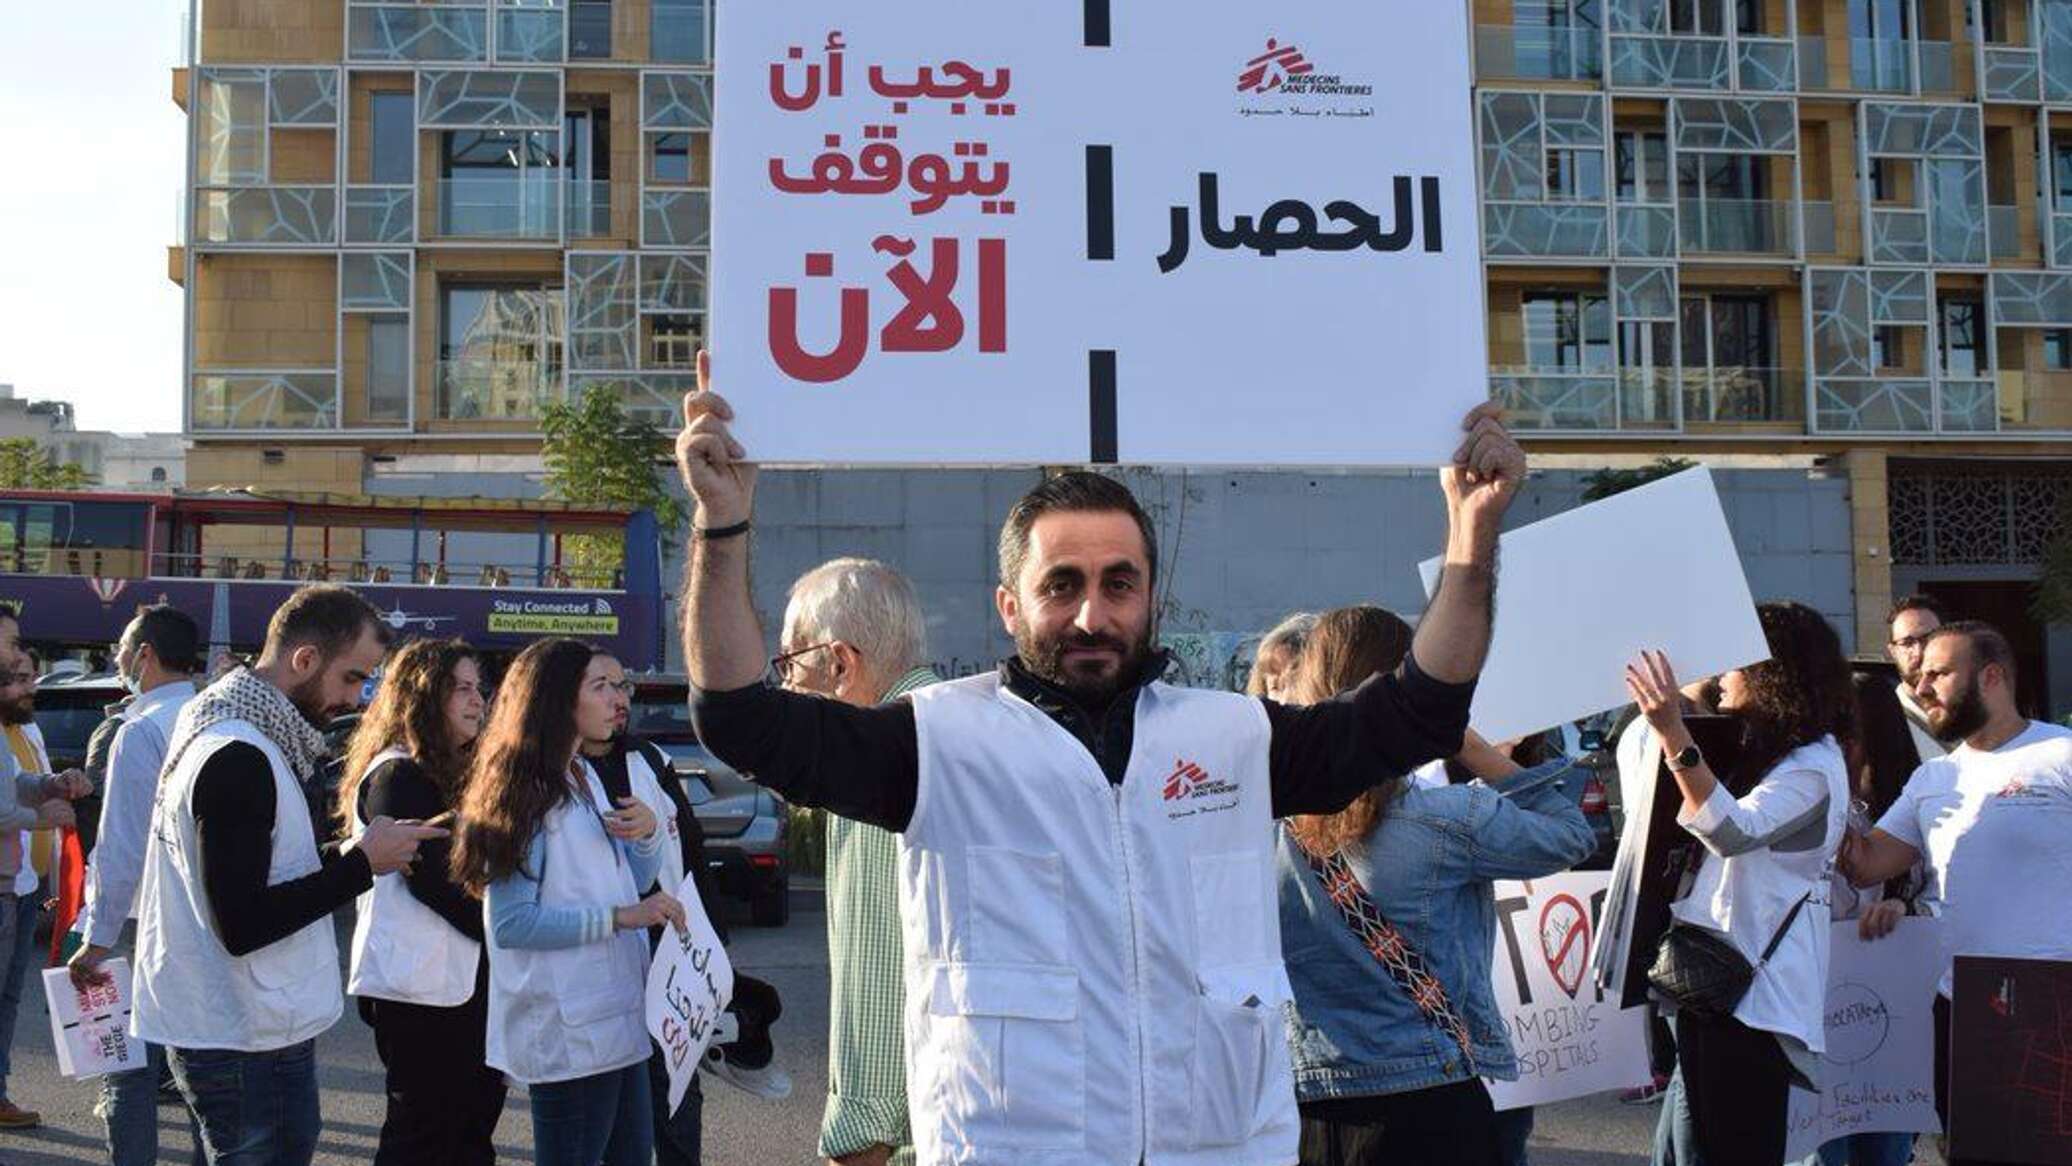 "أطباء بلا حدود" في لبنان تتحرك من أجل غزة... "نطالب بوقف الاعتداءات الإسرائيلية"